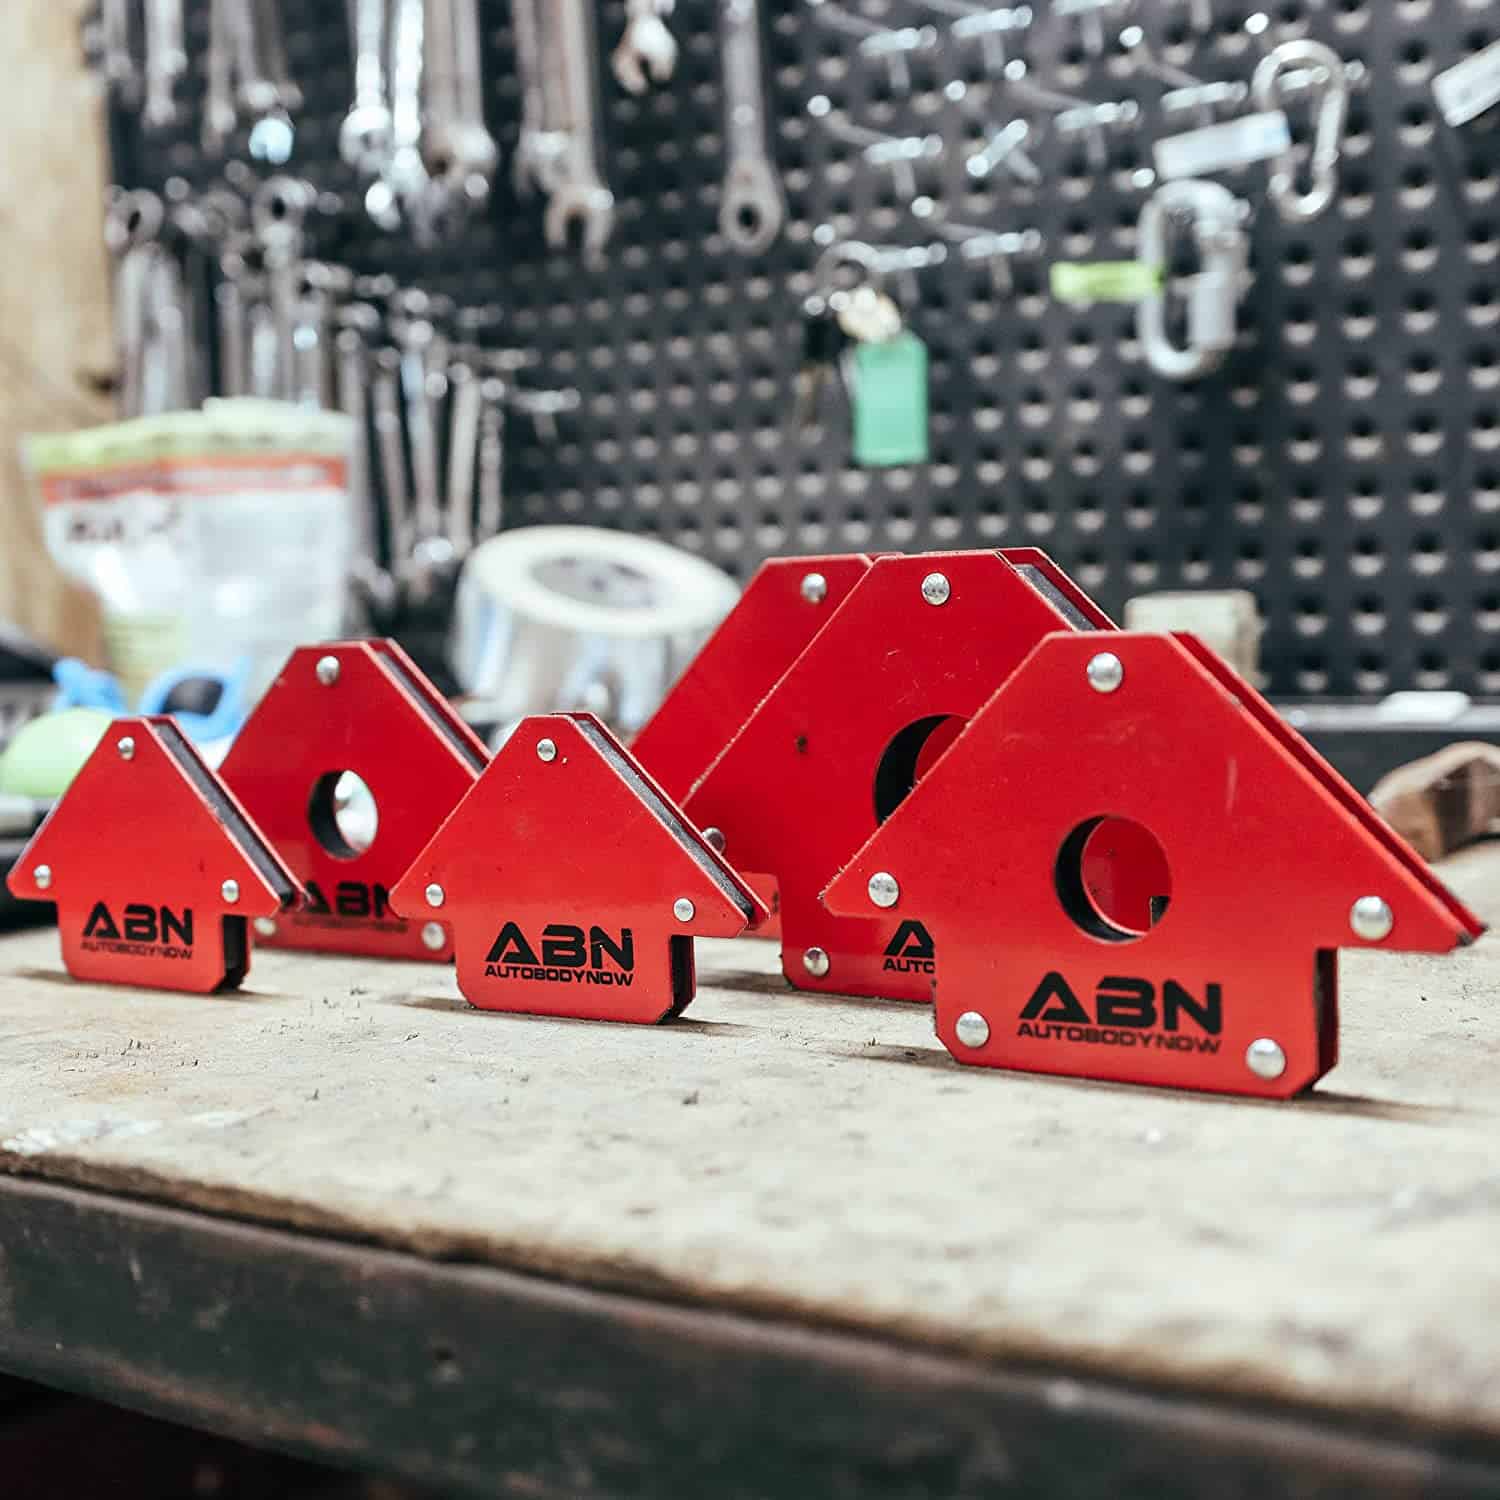 Beste pijlvormige lasmagneet - ABN Arrow Welding Magnet set op werkbank